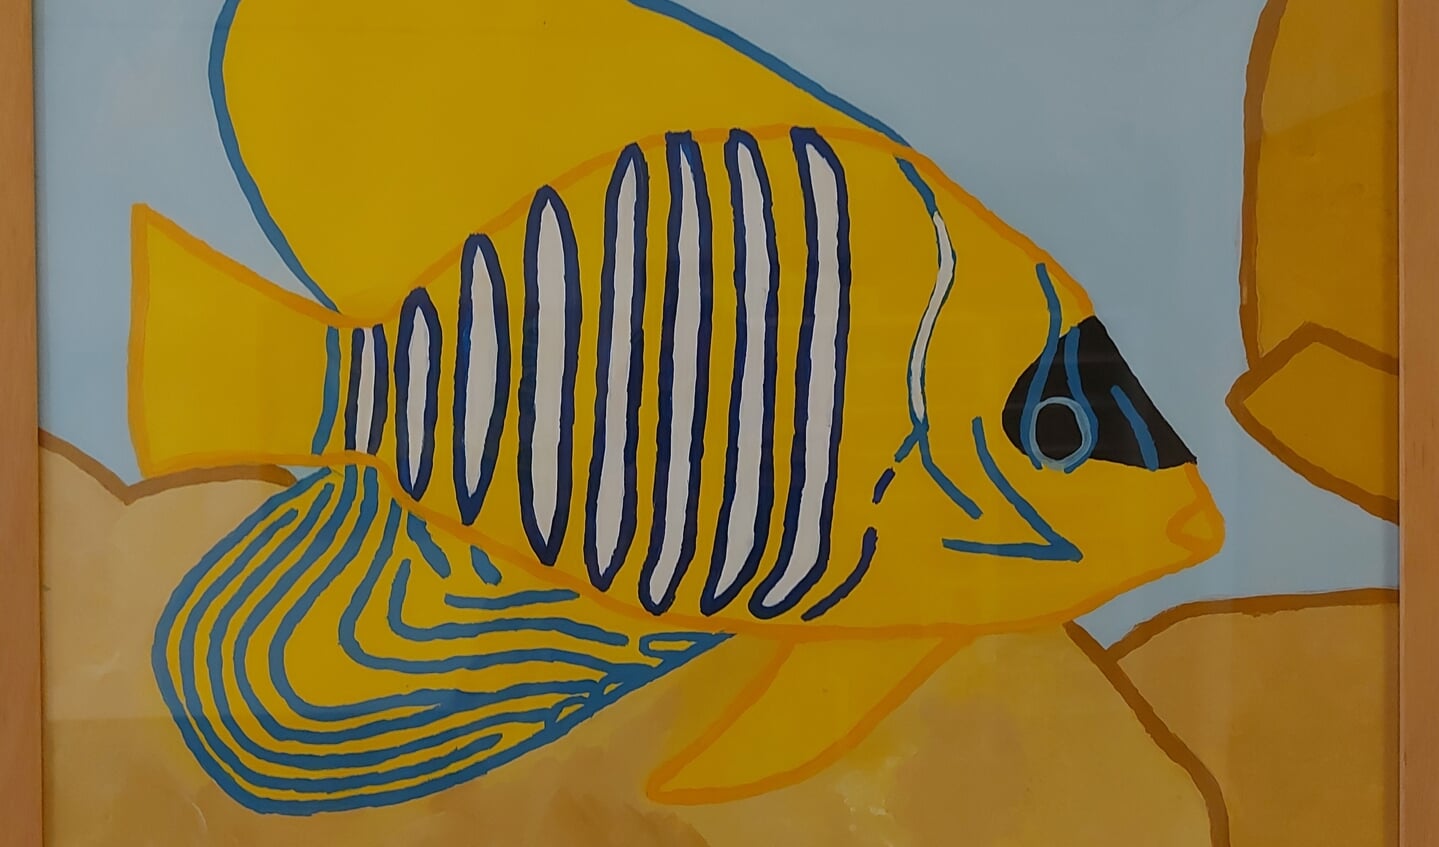 Foto: Gele vis – Niet de titel van het werk – Ruben van Rijs